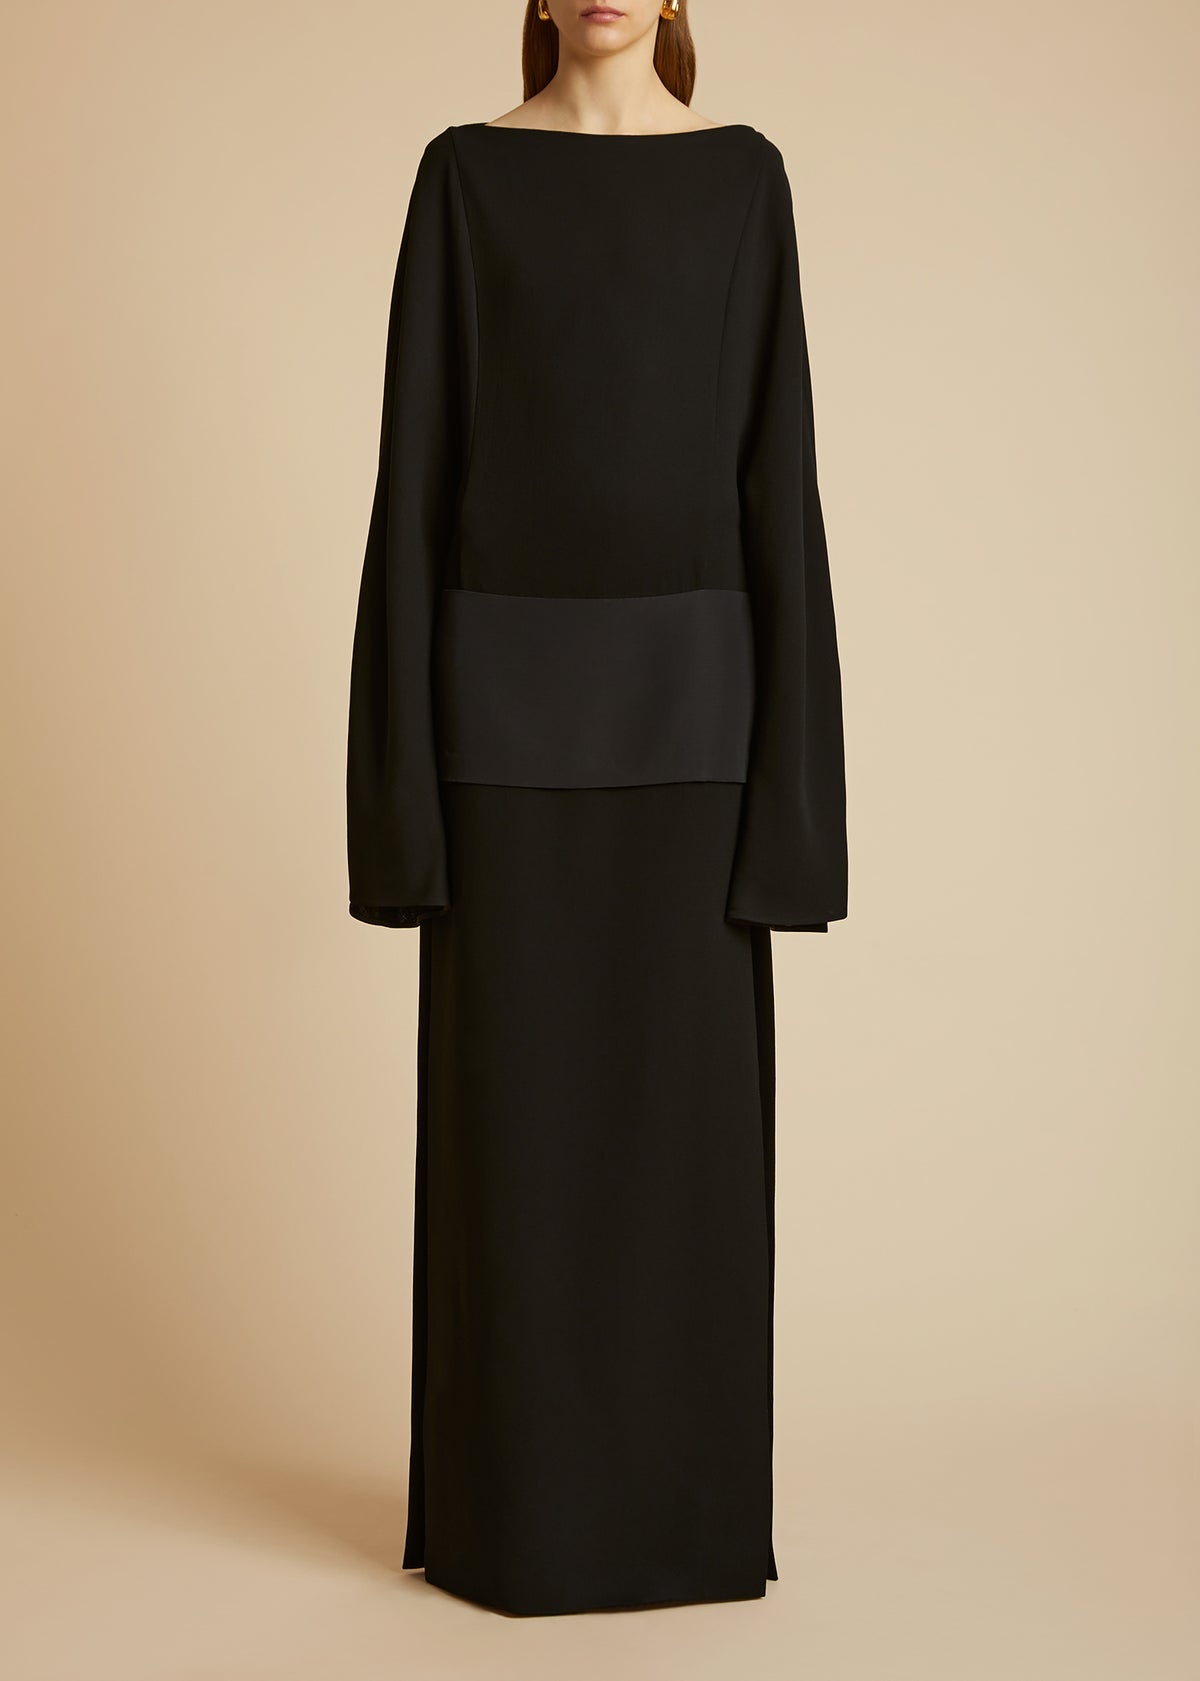 KHAITE The Nanette Dress in Black | REVERSIBLE